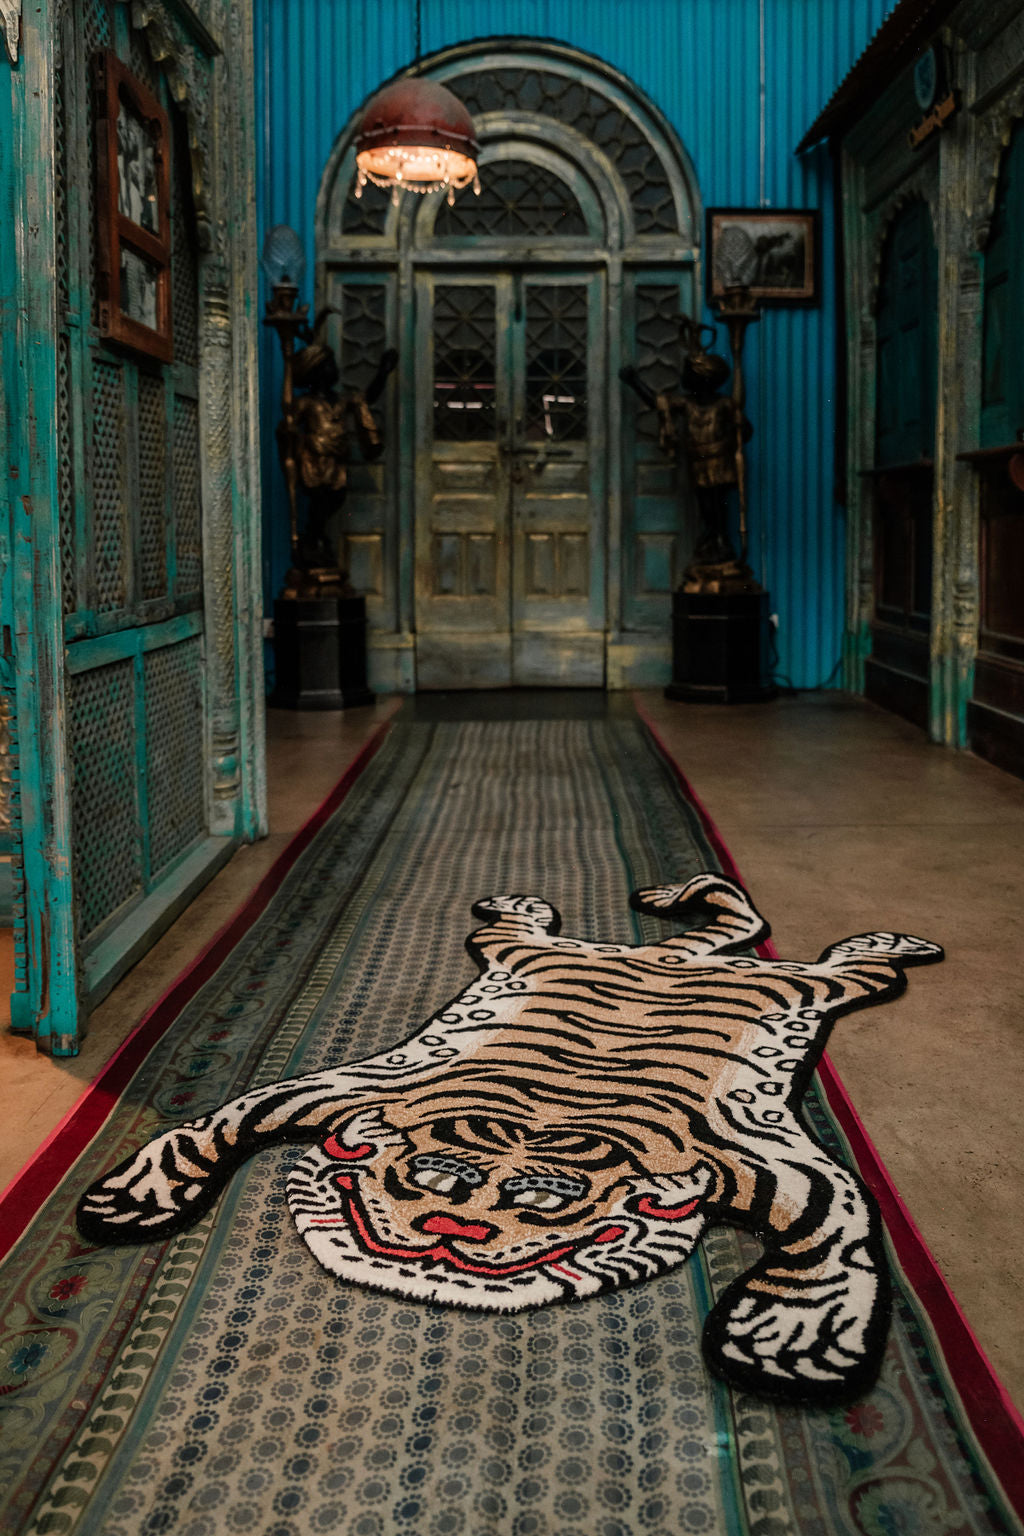 Large Tibetan Tiger Rug